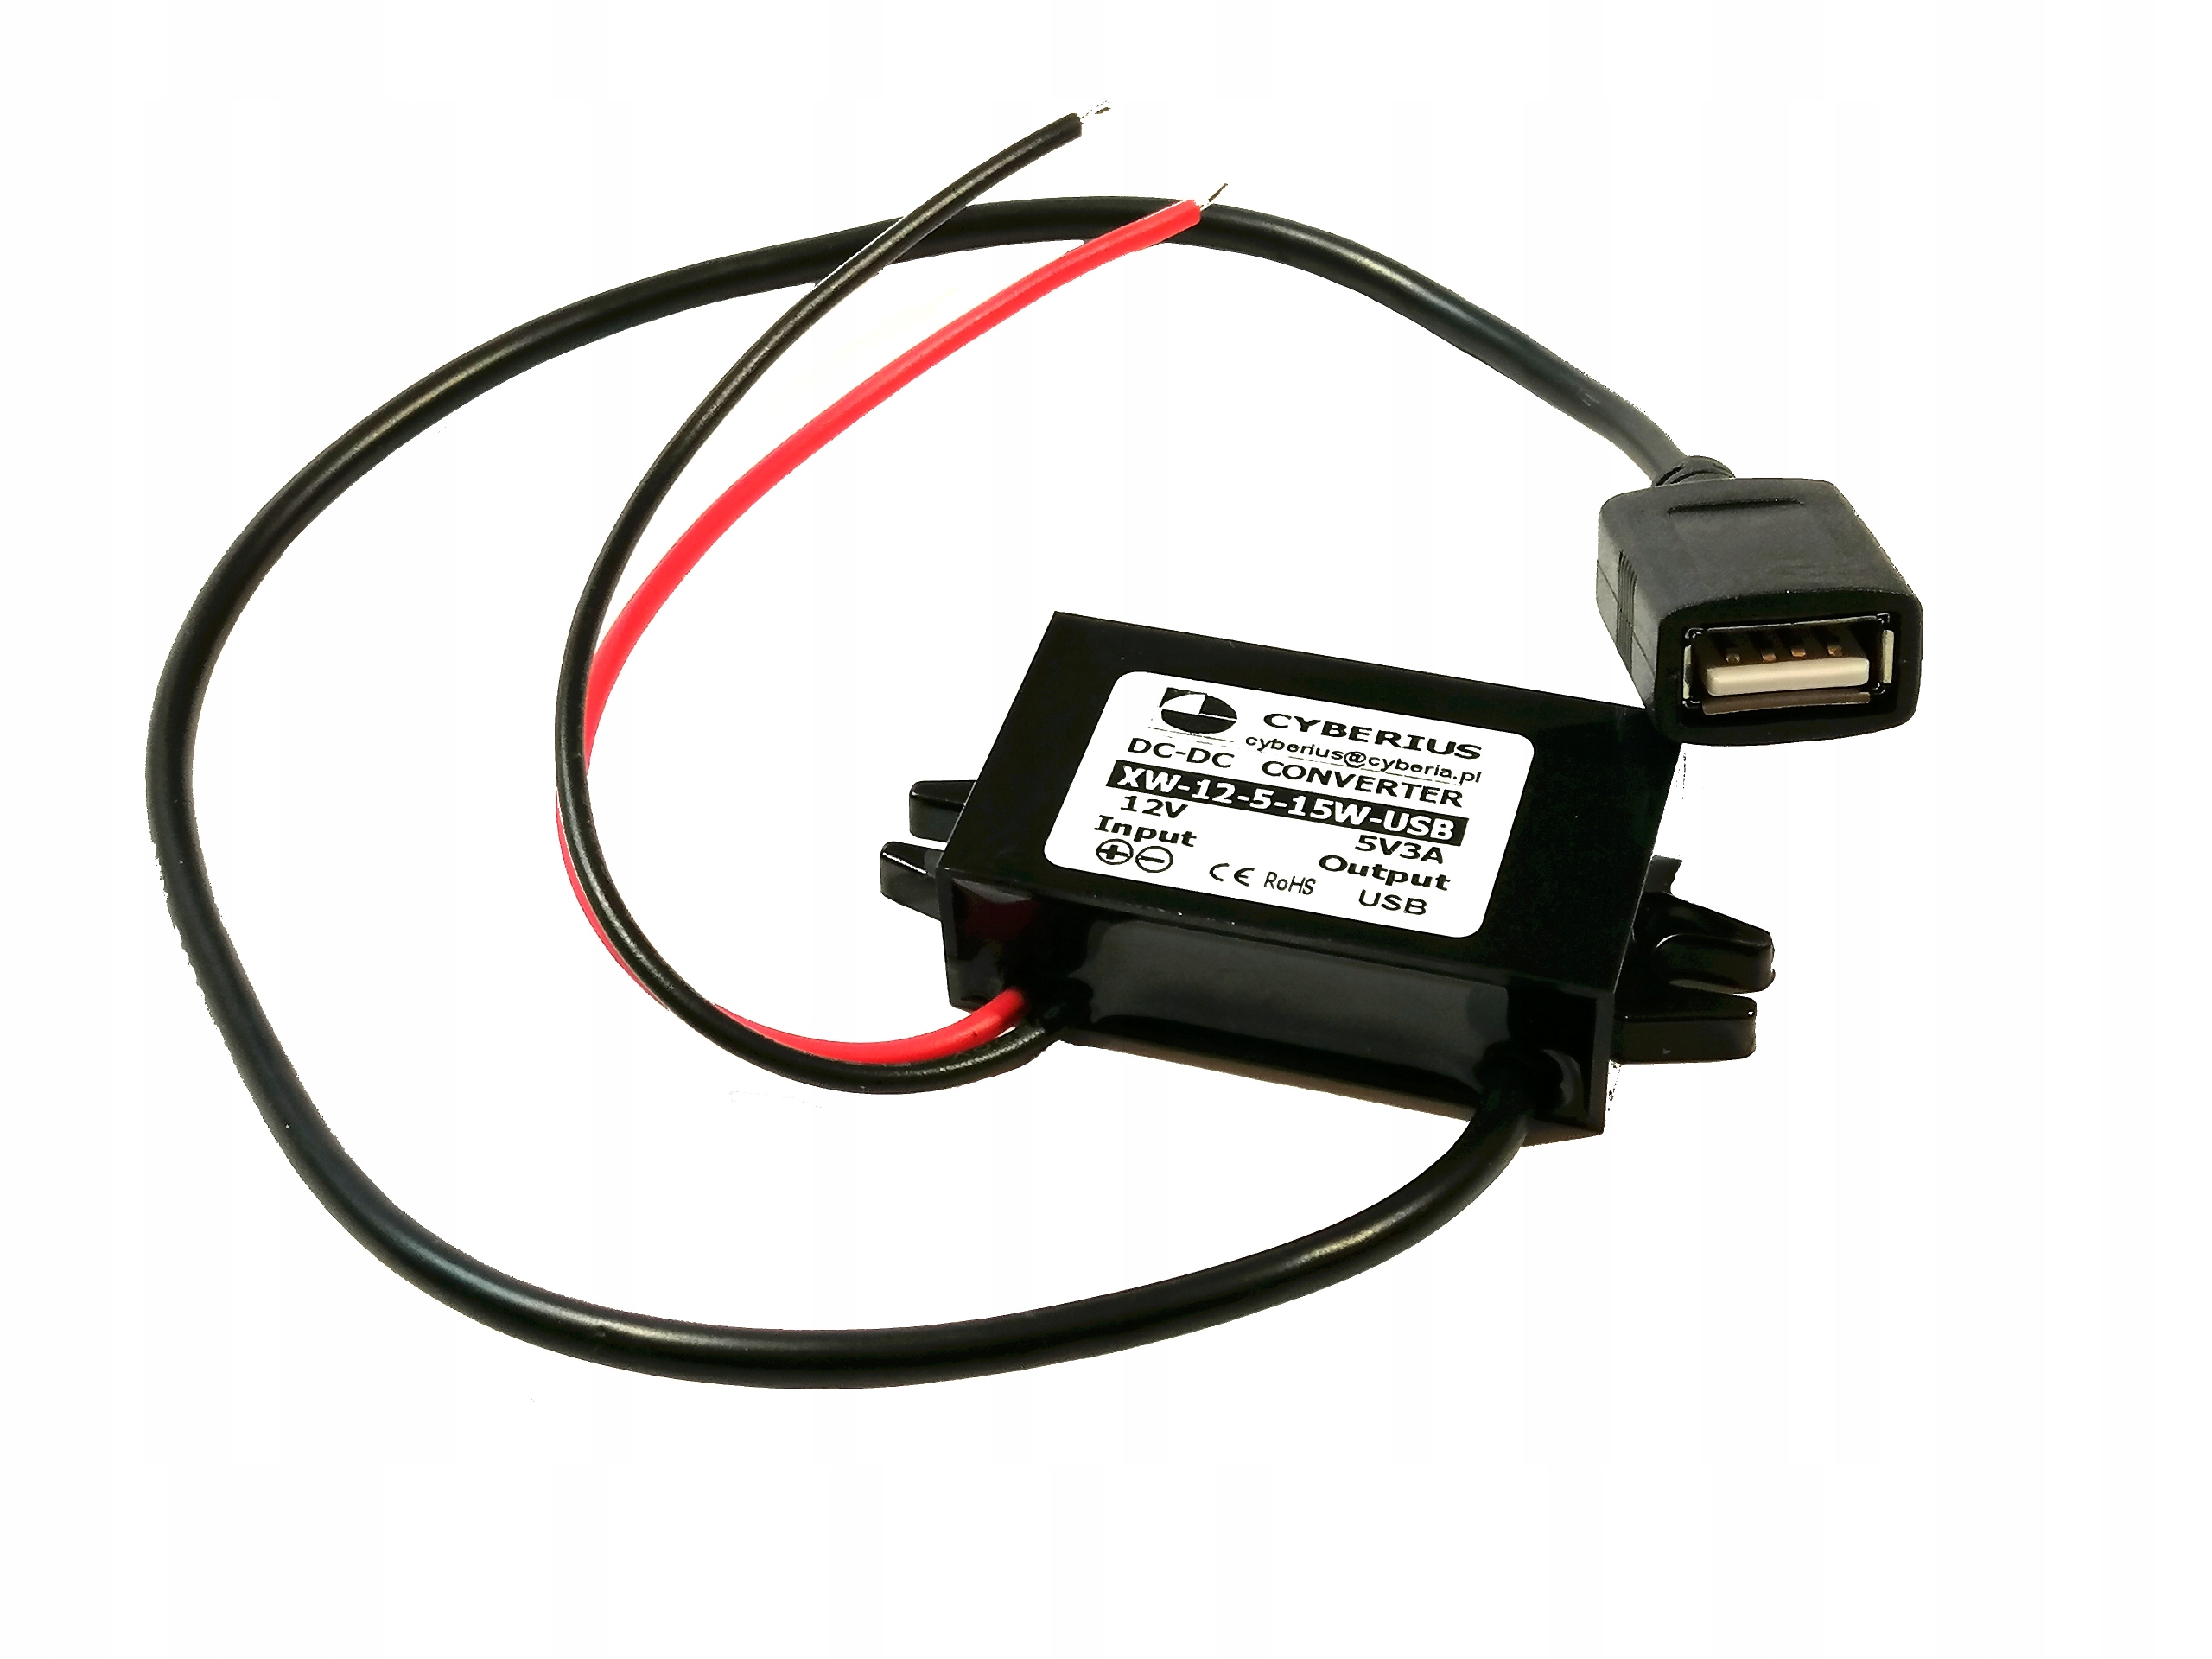 kabel - měnič nap. 12V x 5V/3A USB za 196 Kč - Allegro